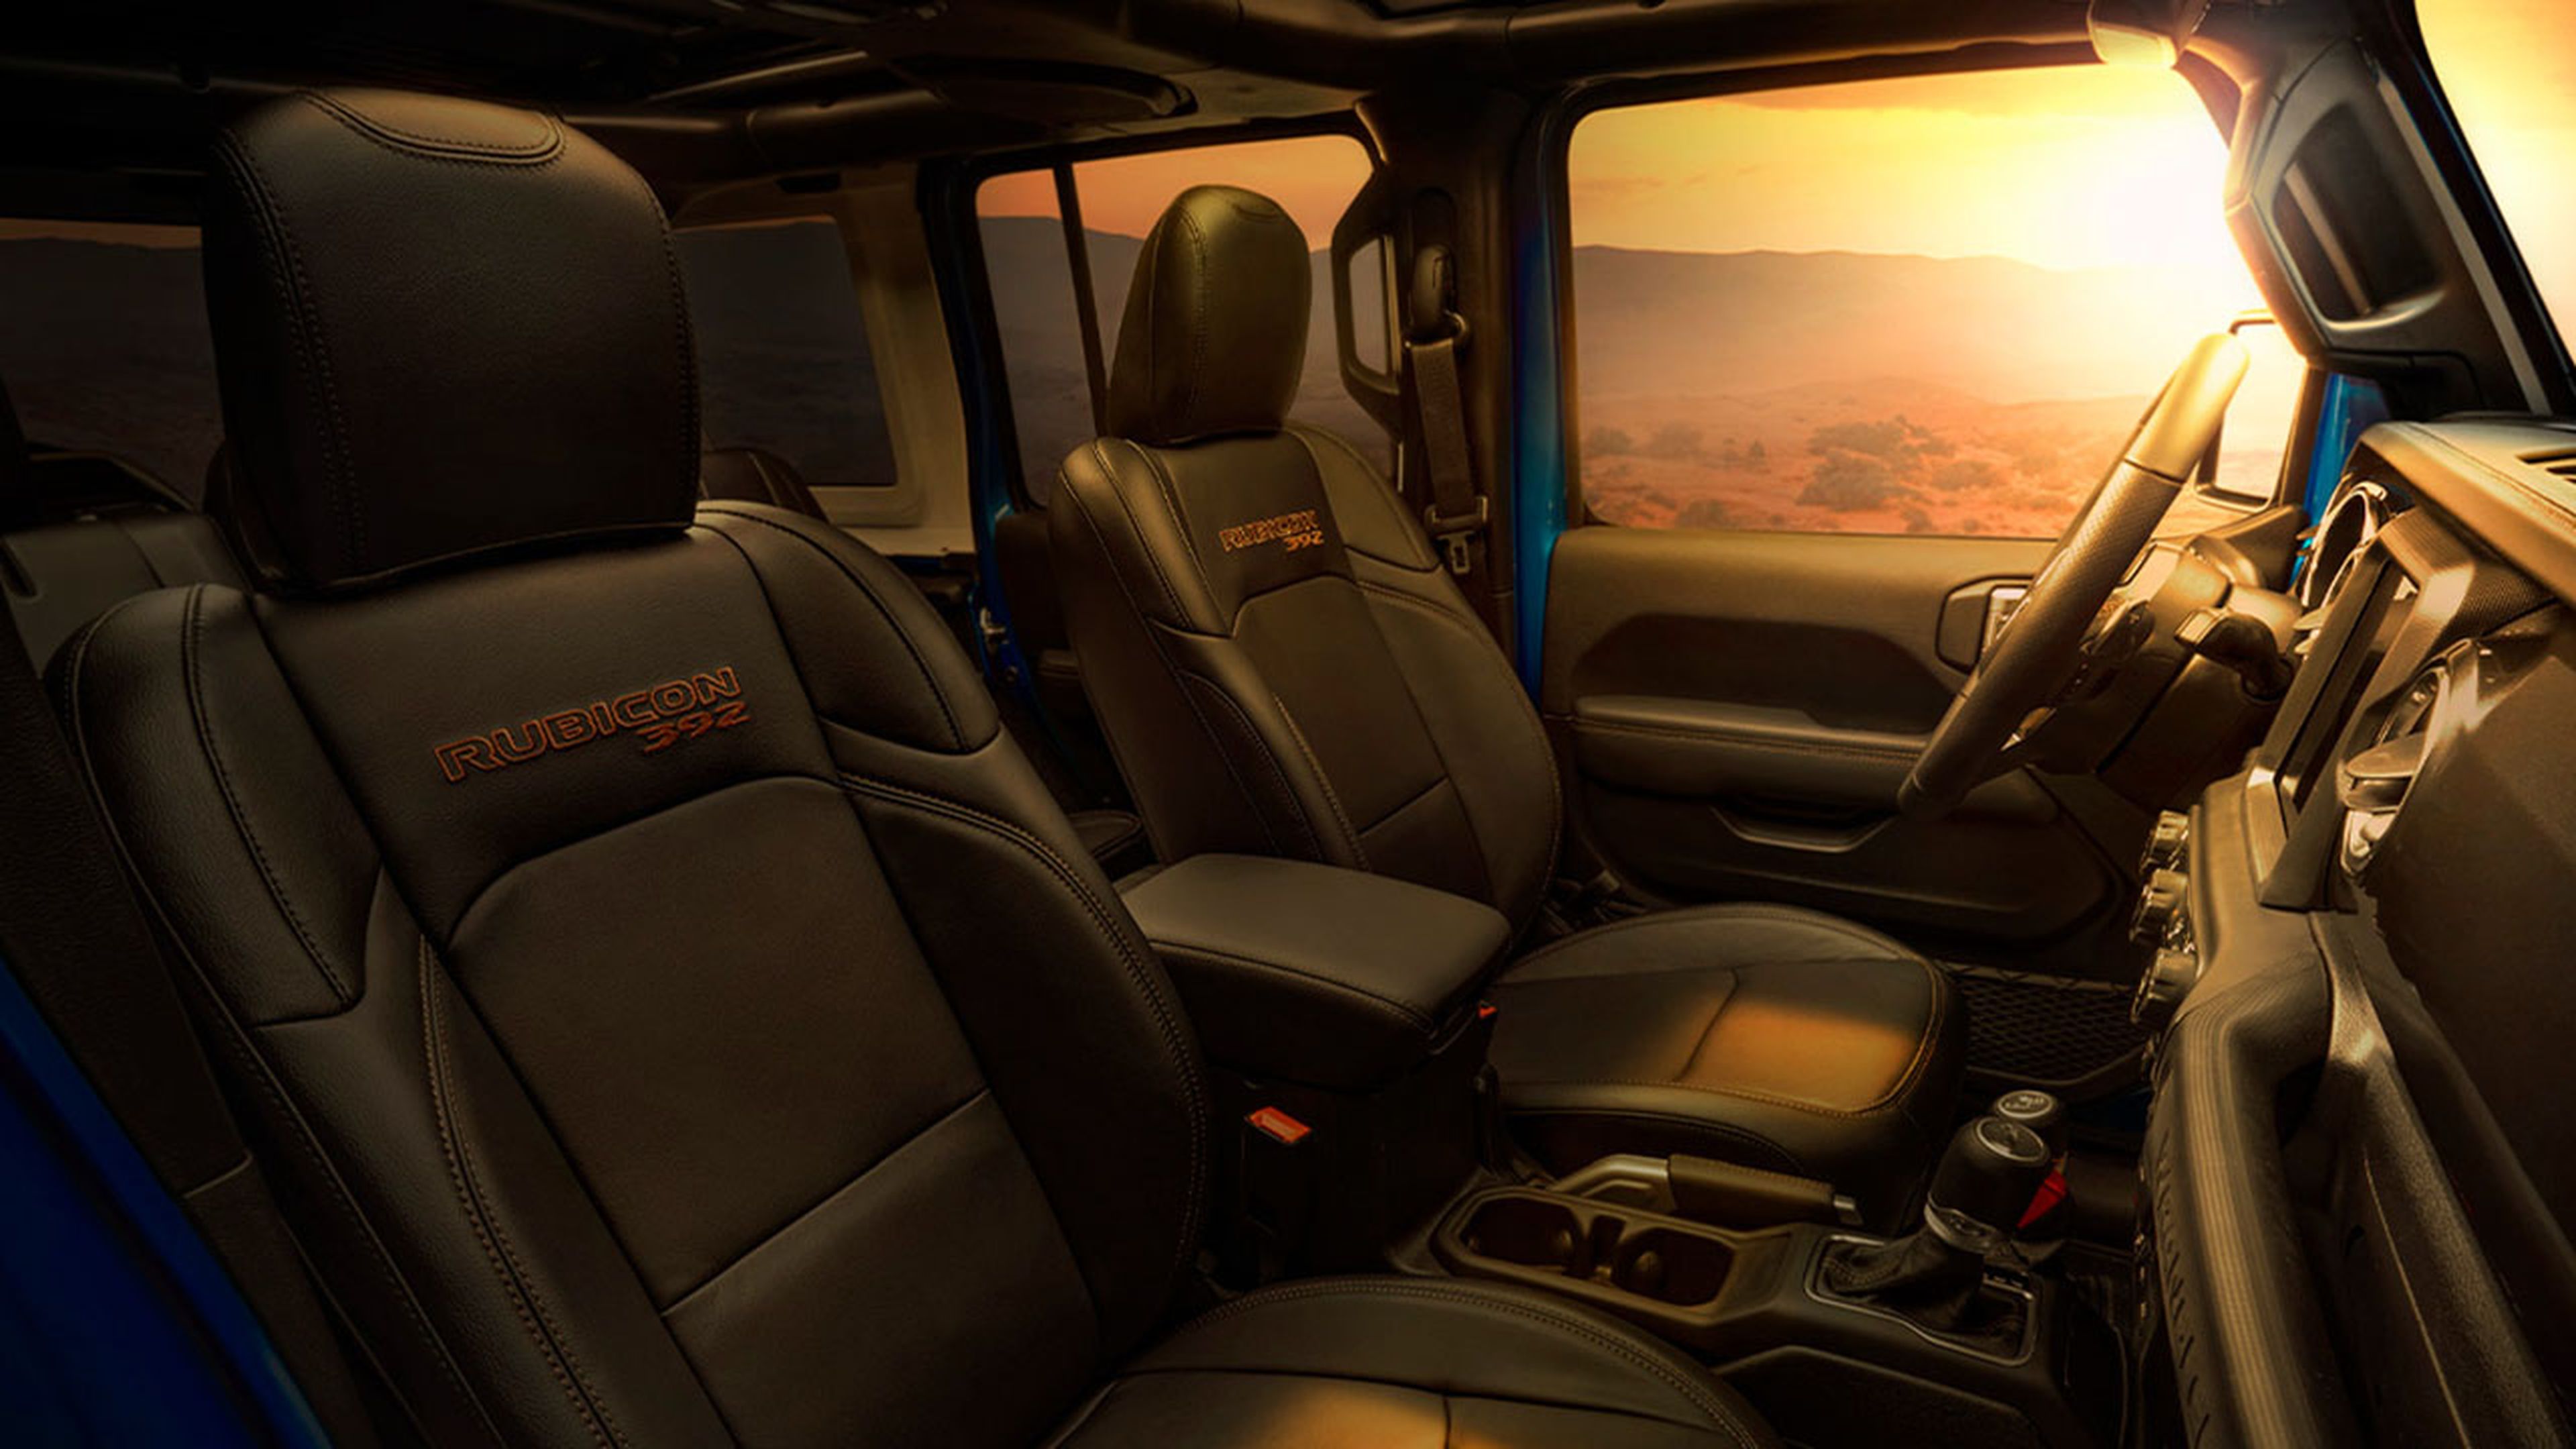 Exquisito y refinado interior (Jeep).